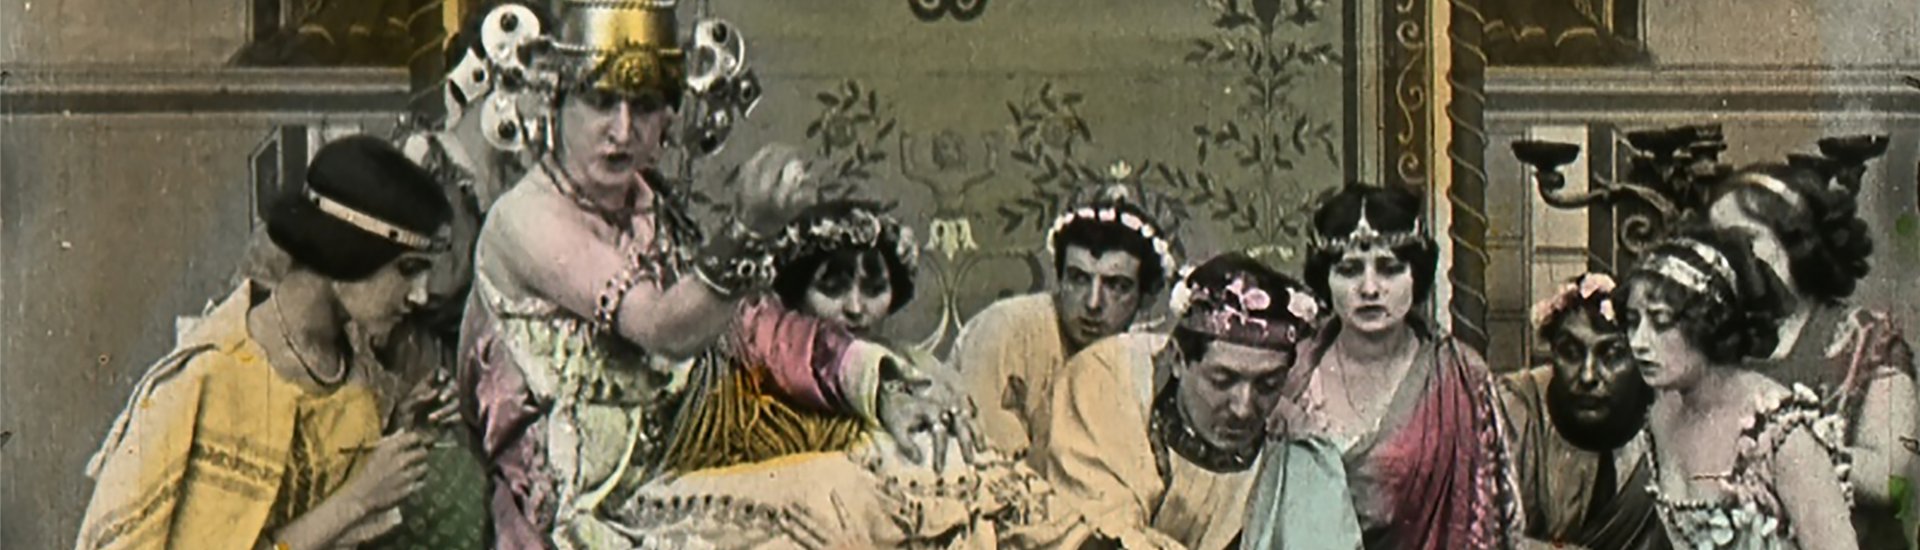 Beeld uit de film L'orgie Romaine, 1911. (Collectie Desmet | EYE)